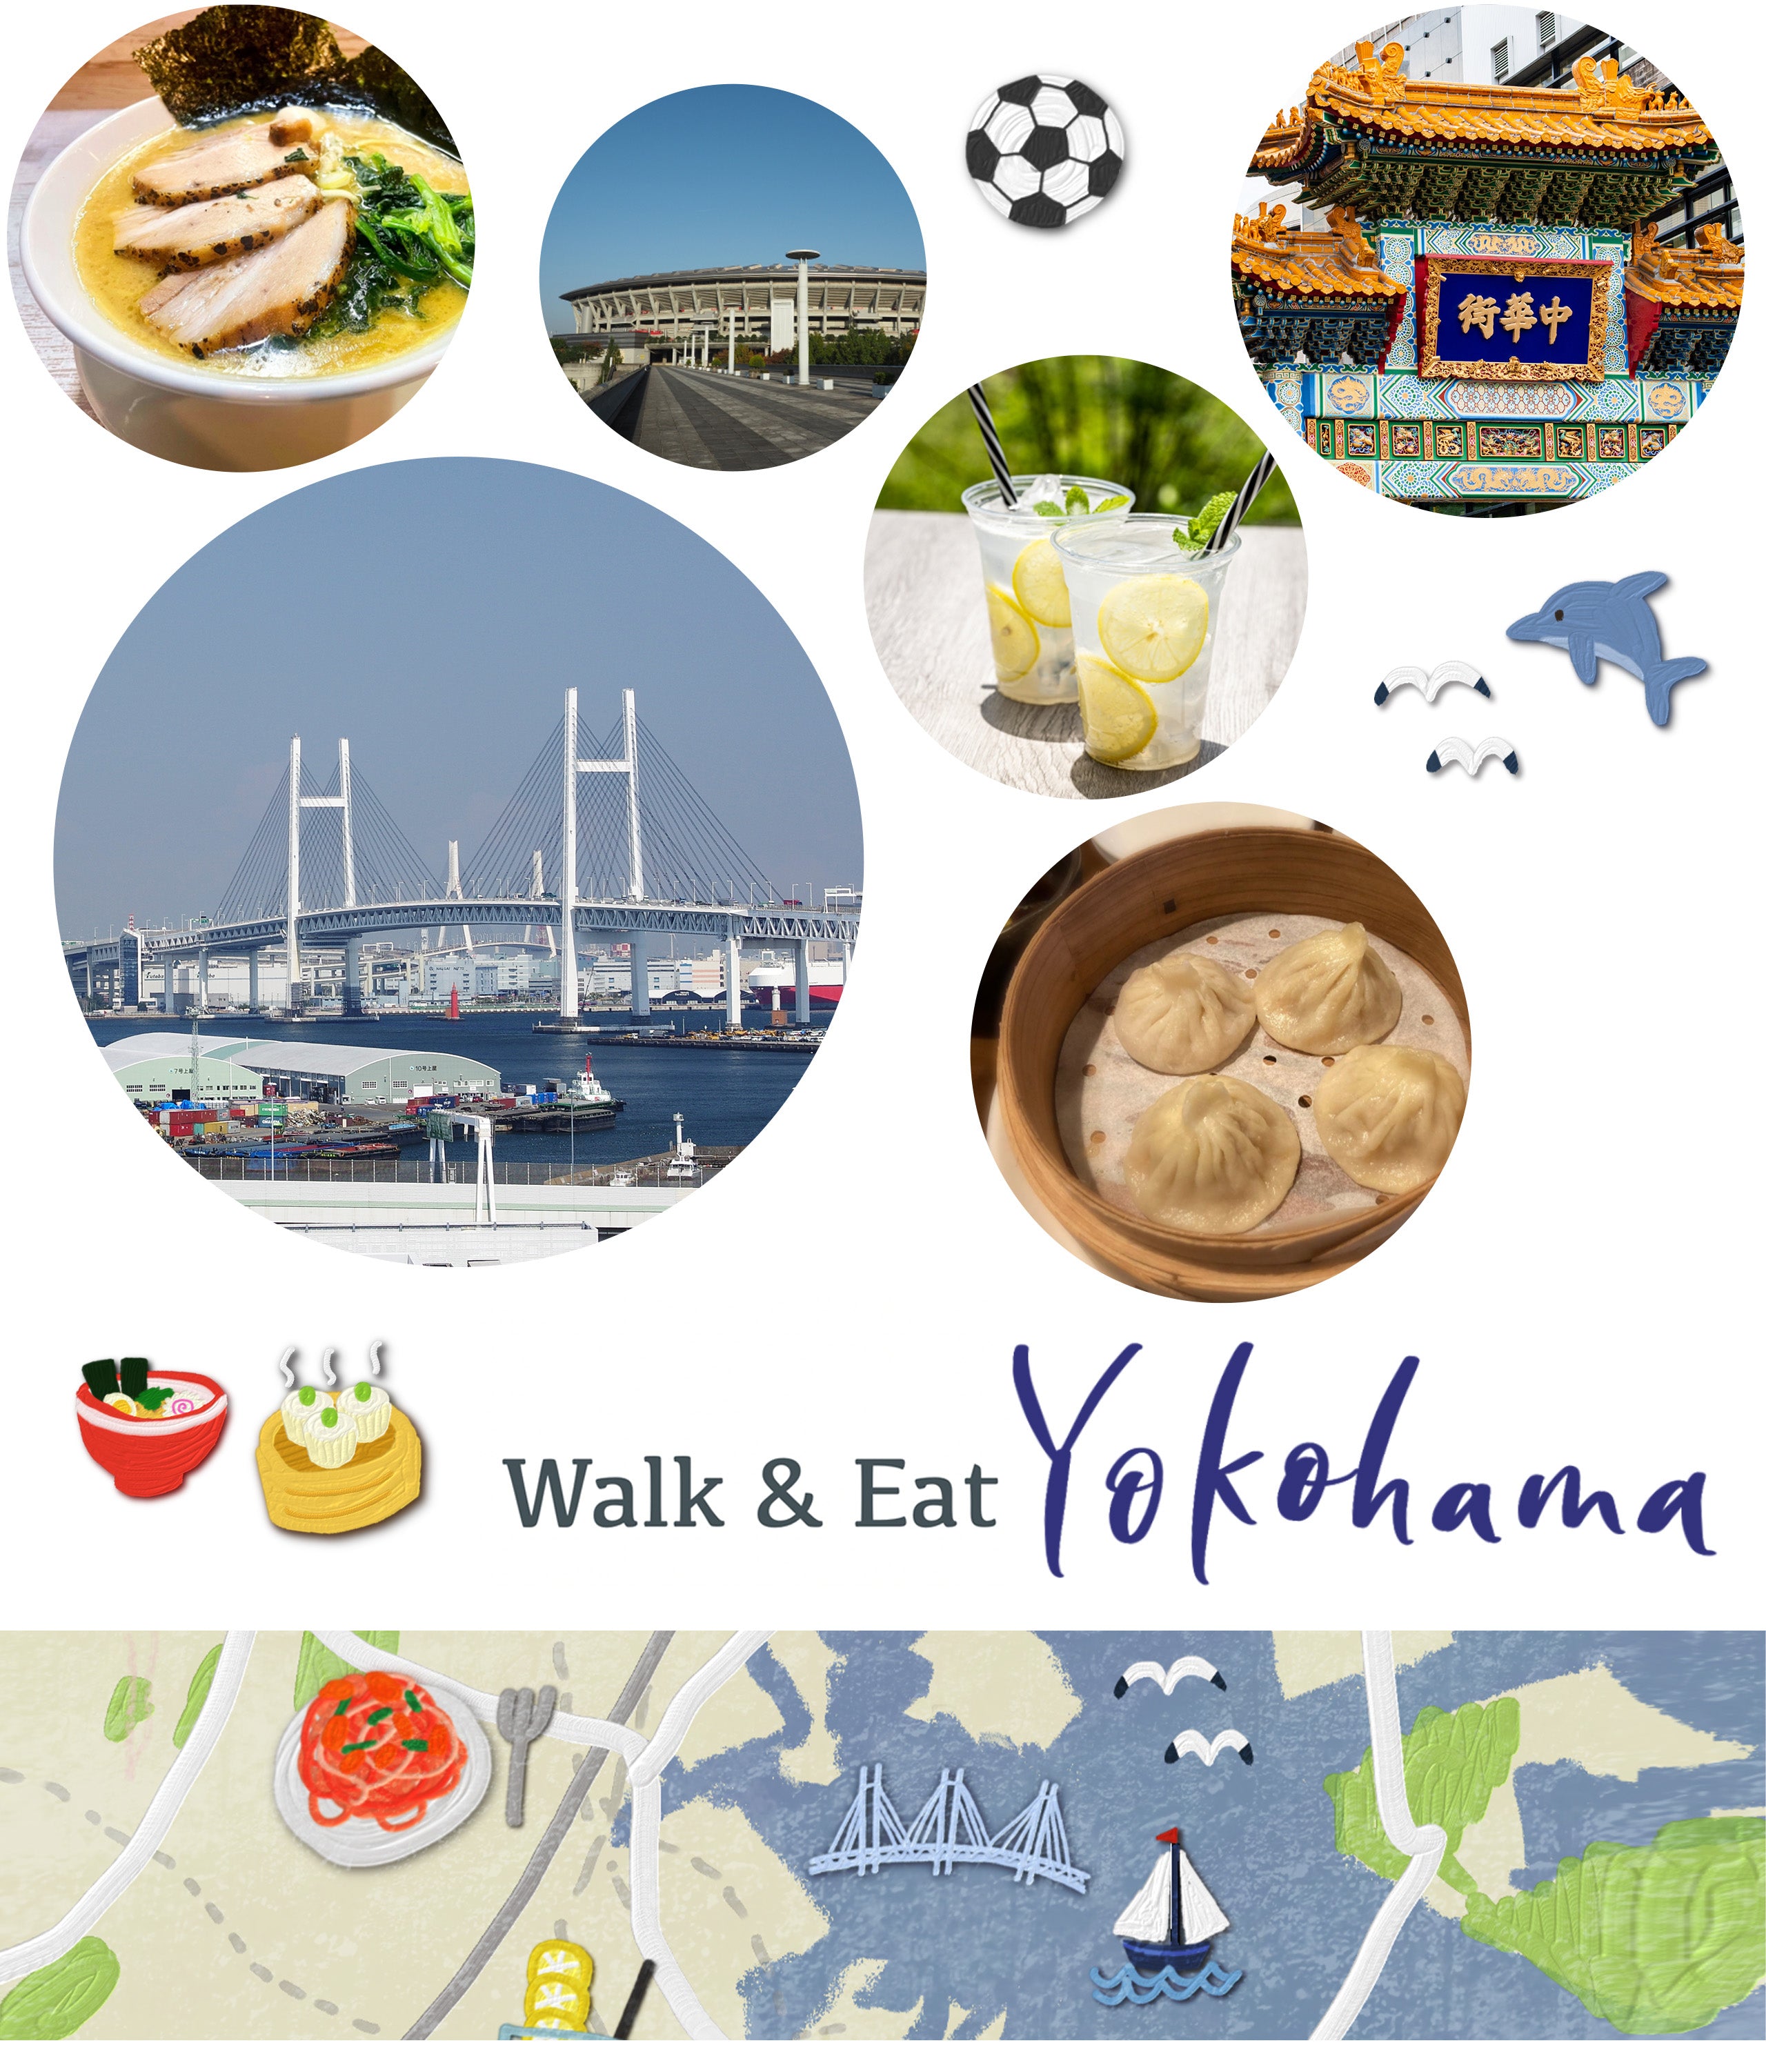 Walk & Eat Yokohama